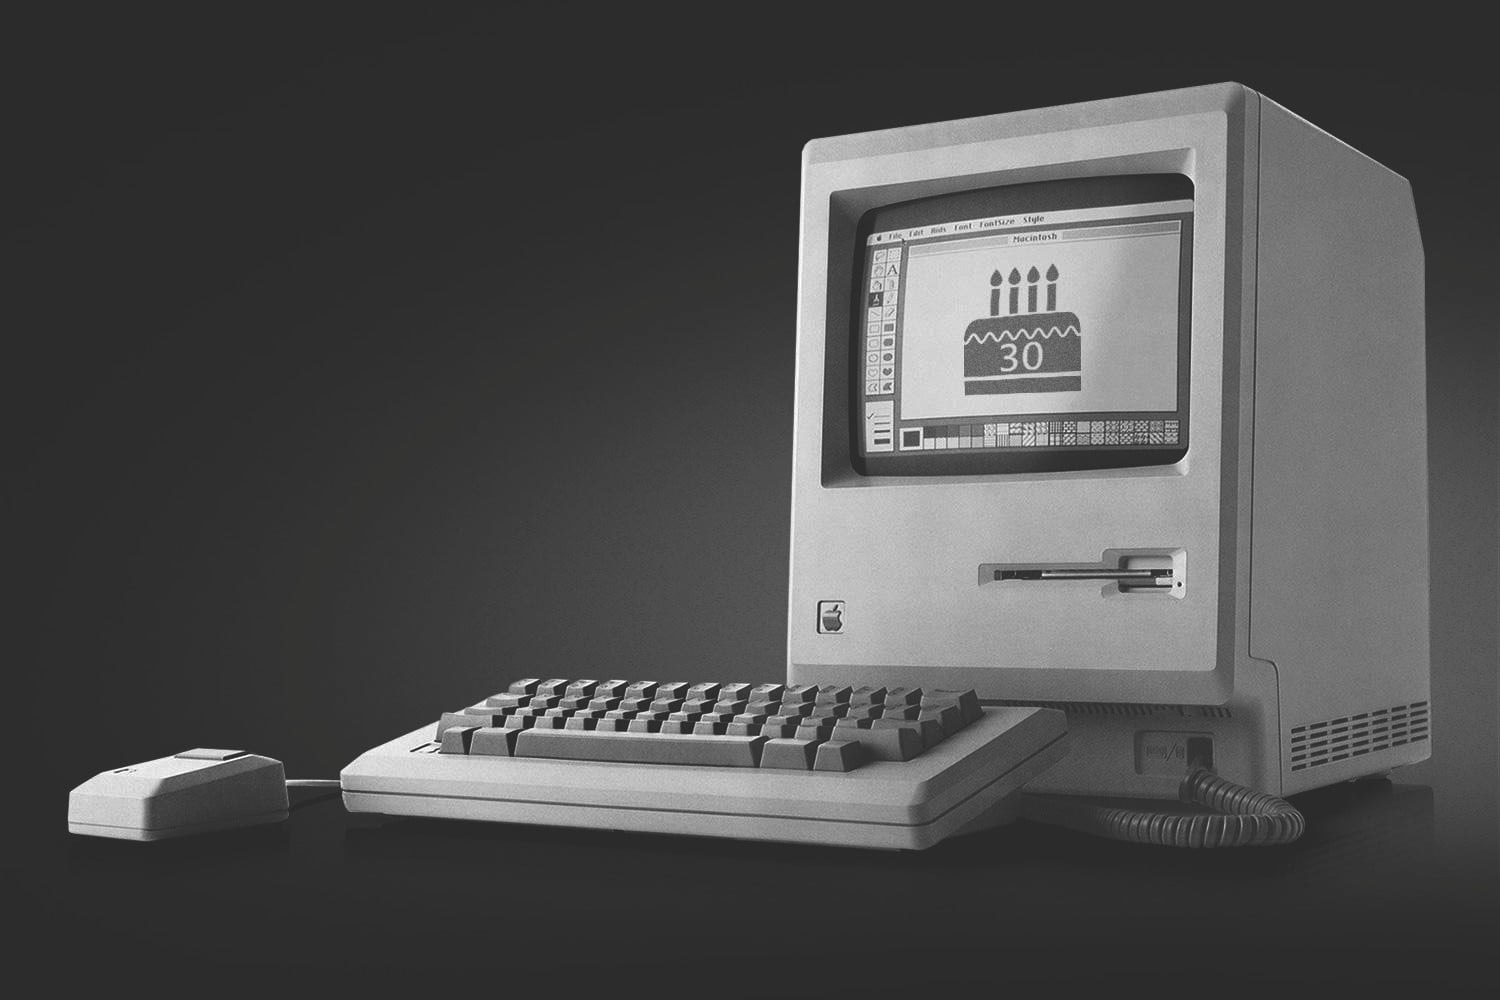 Aniversário de 35 anos do primeiro Macintosh lançado em 1984